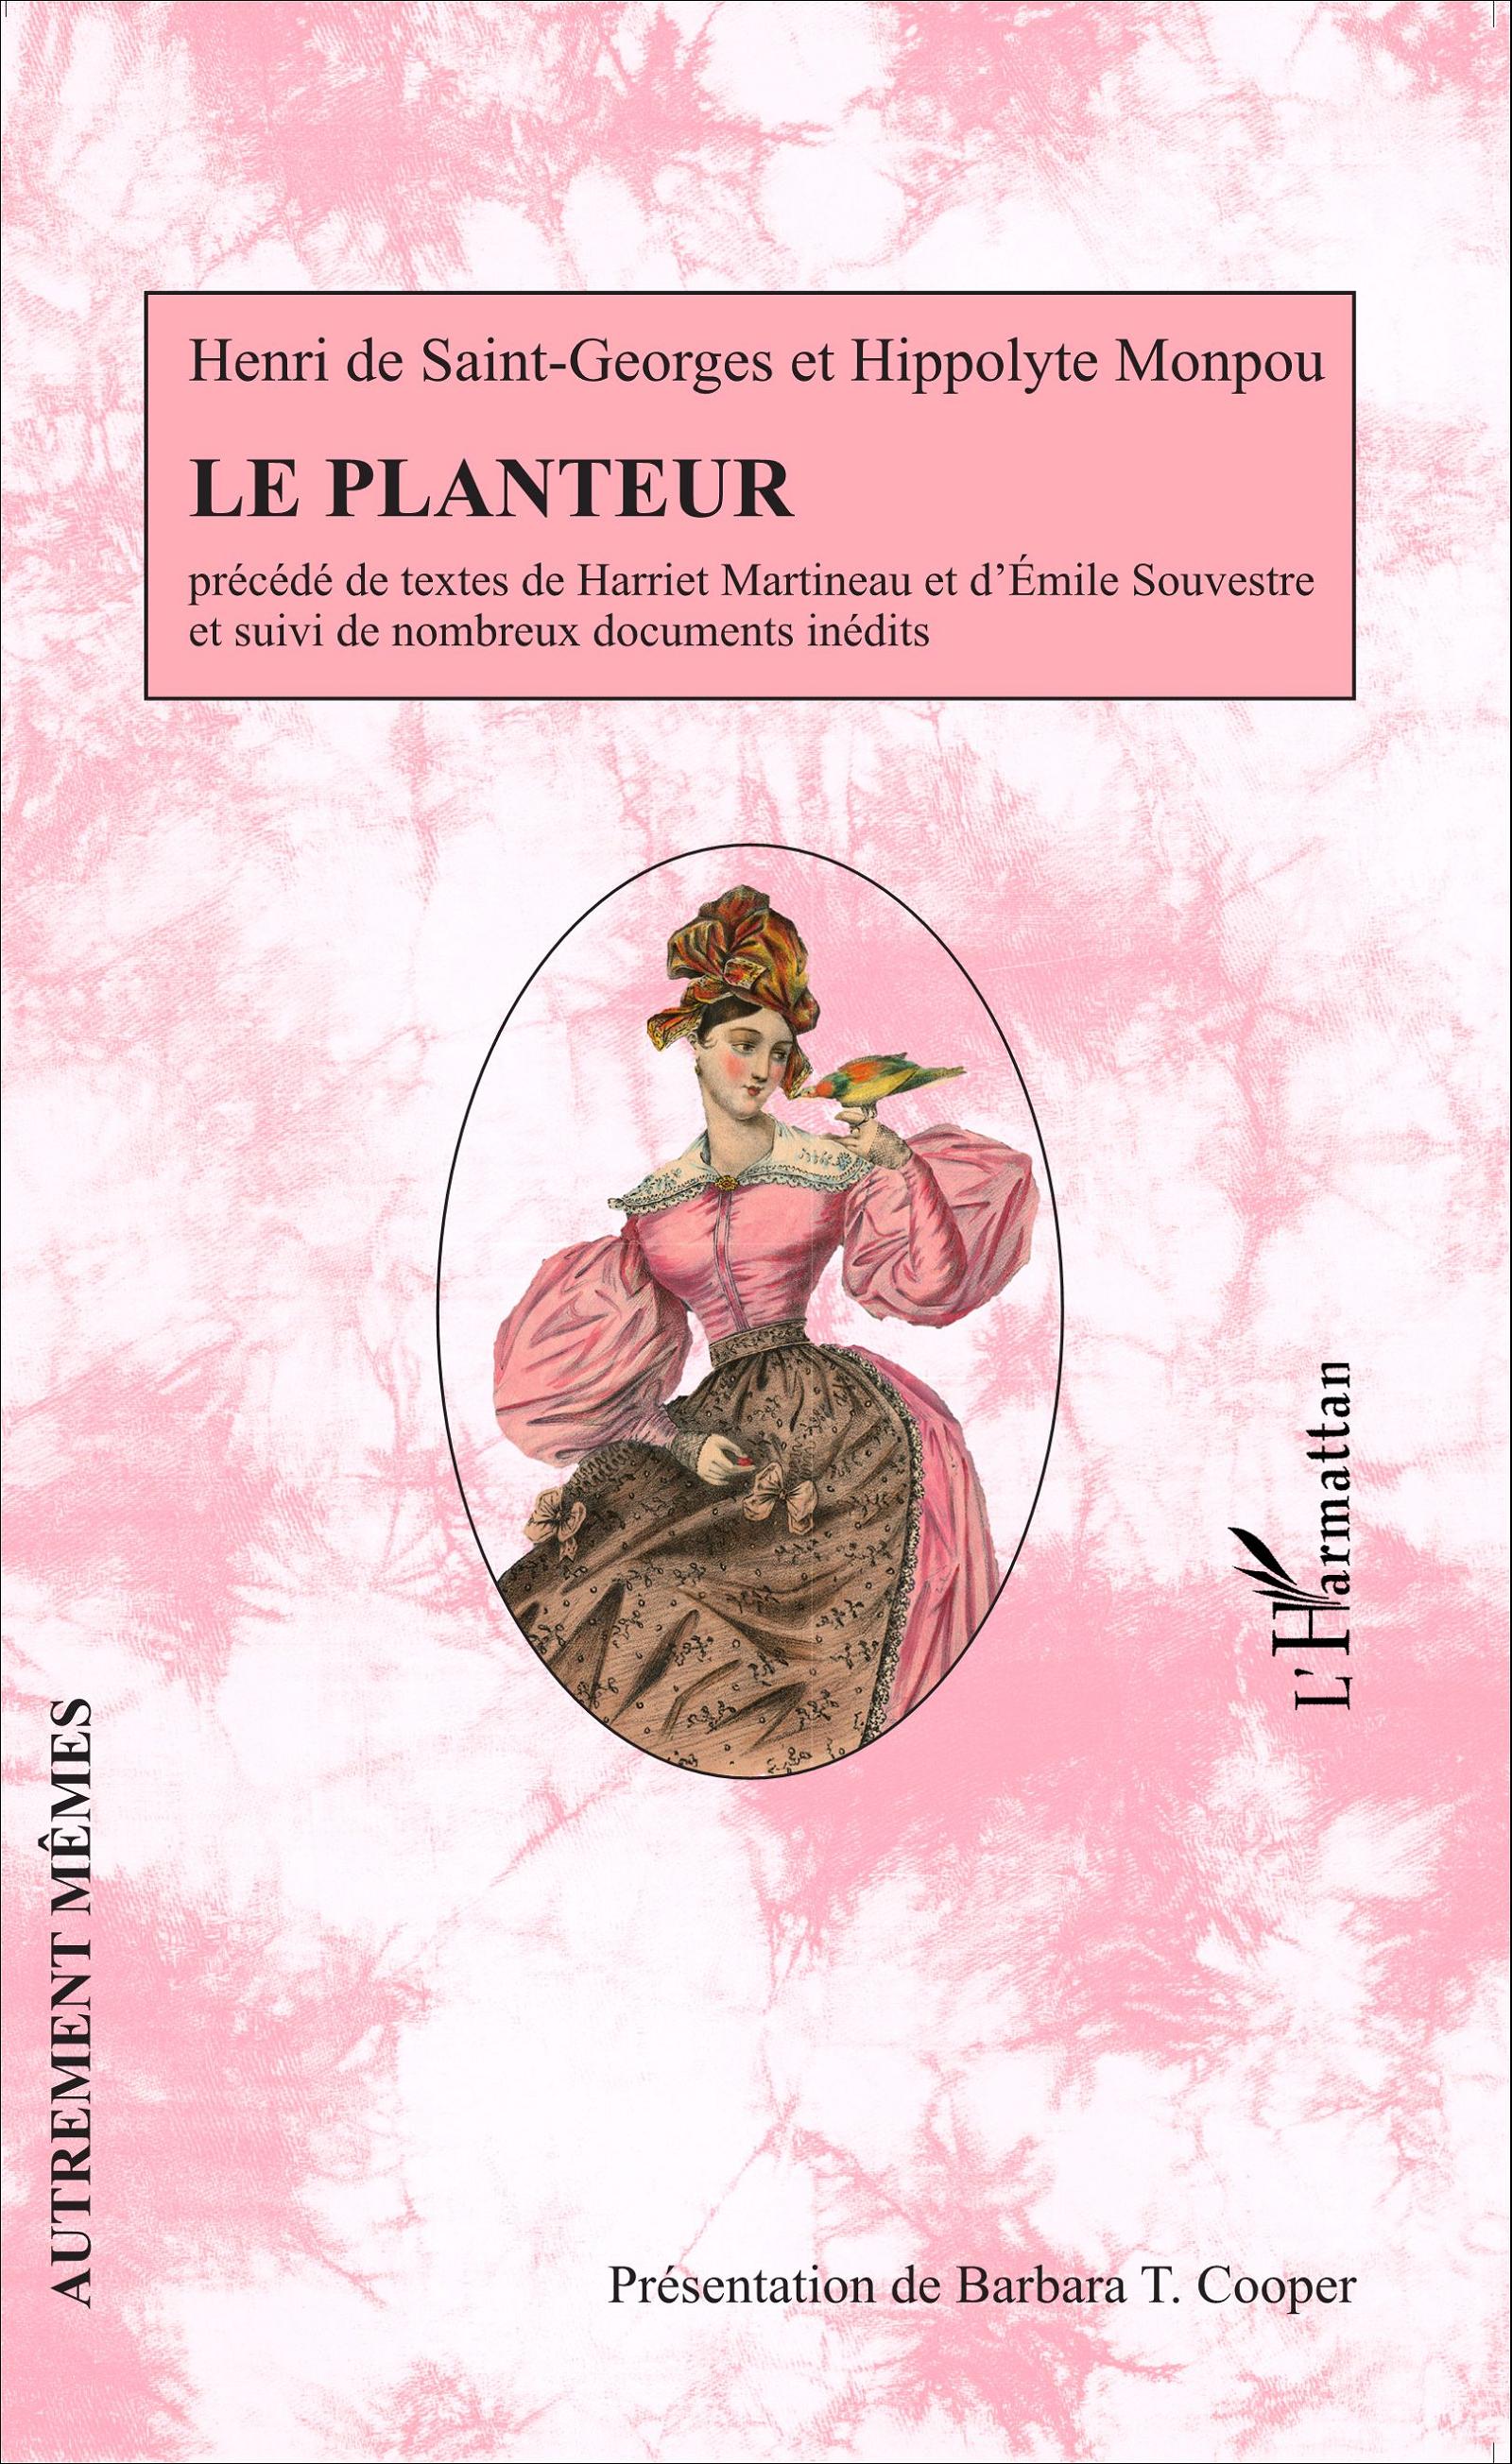 H. de Saint-Georges, Le Planteur ; H. Martineau,Voyage aux États-Unis ; É. Souvestre, L’Inventaire du planteur